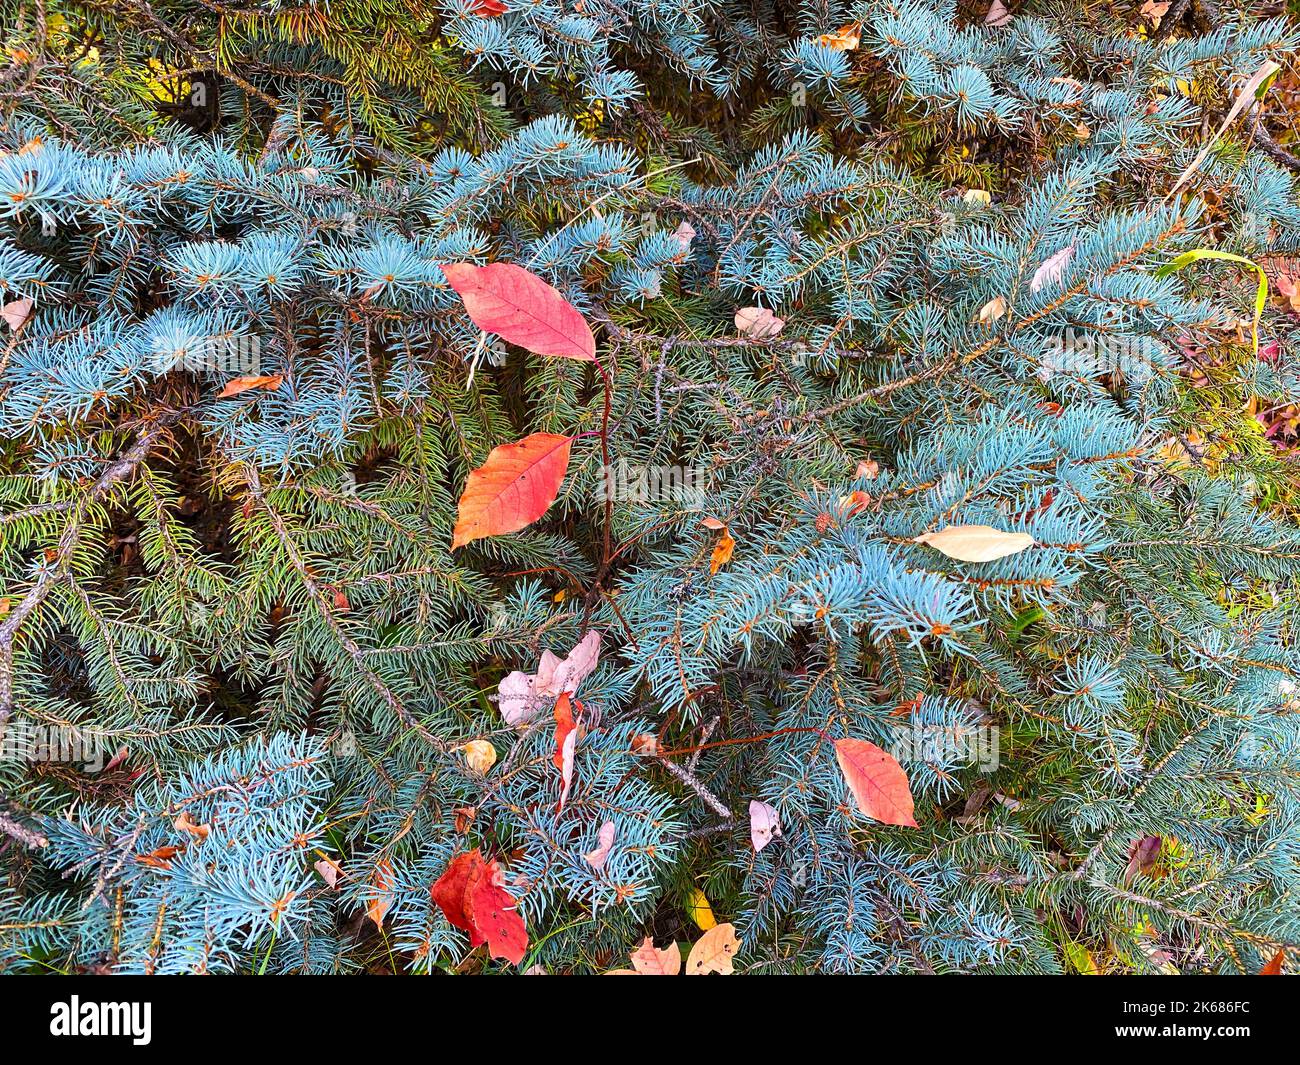 Eine weihnachtskiefer immergrüne herbstliche Kiefern Herbst Urlaub Jahreszeiten Nadeln Samen Garten Herbst Urlaub trockene Kiefern Laub Bodenbedeckung Meer Stockfoto